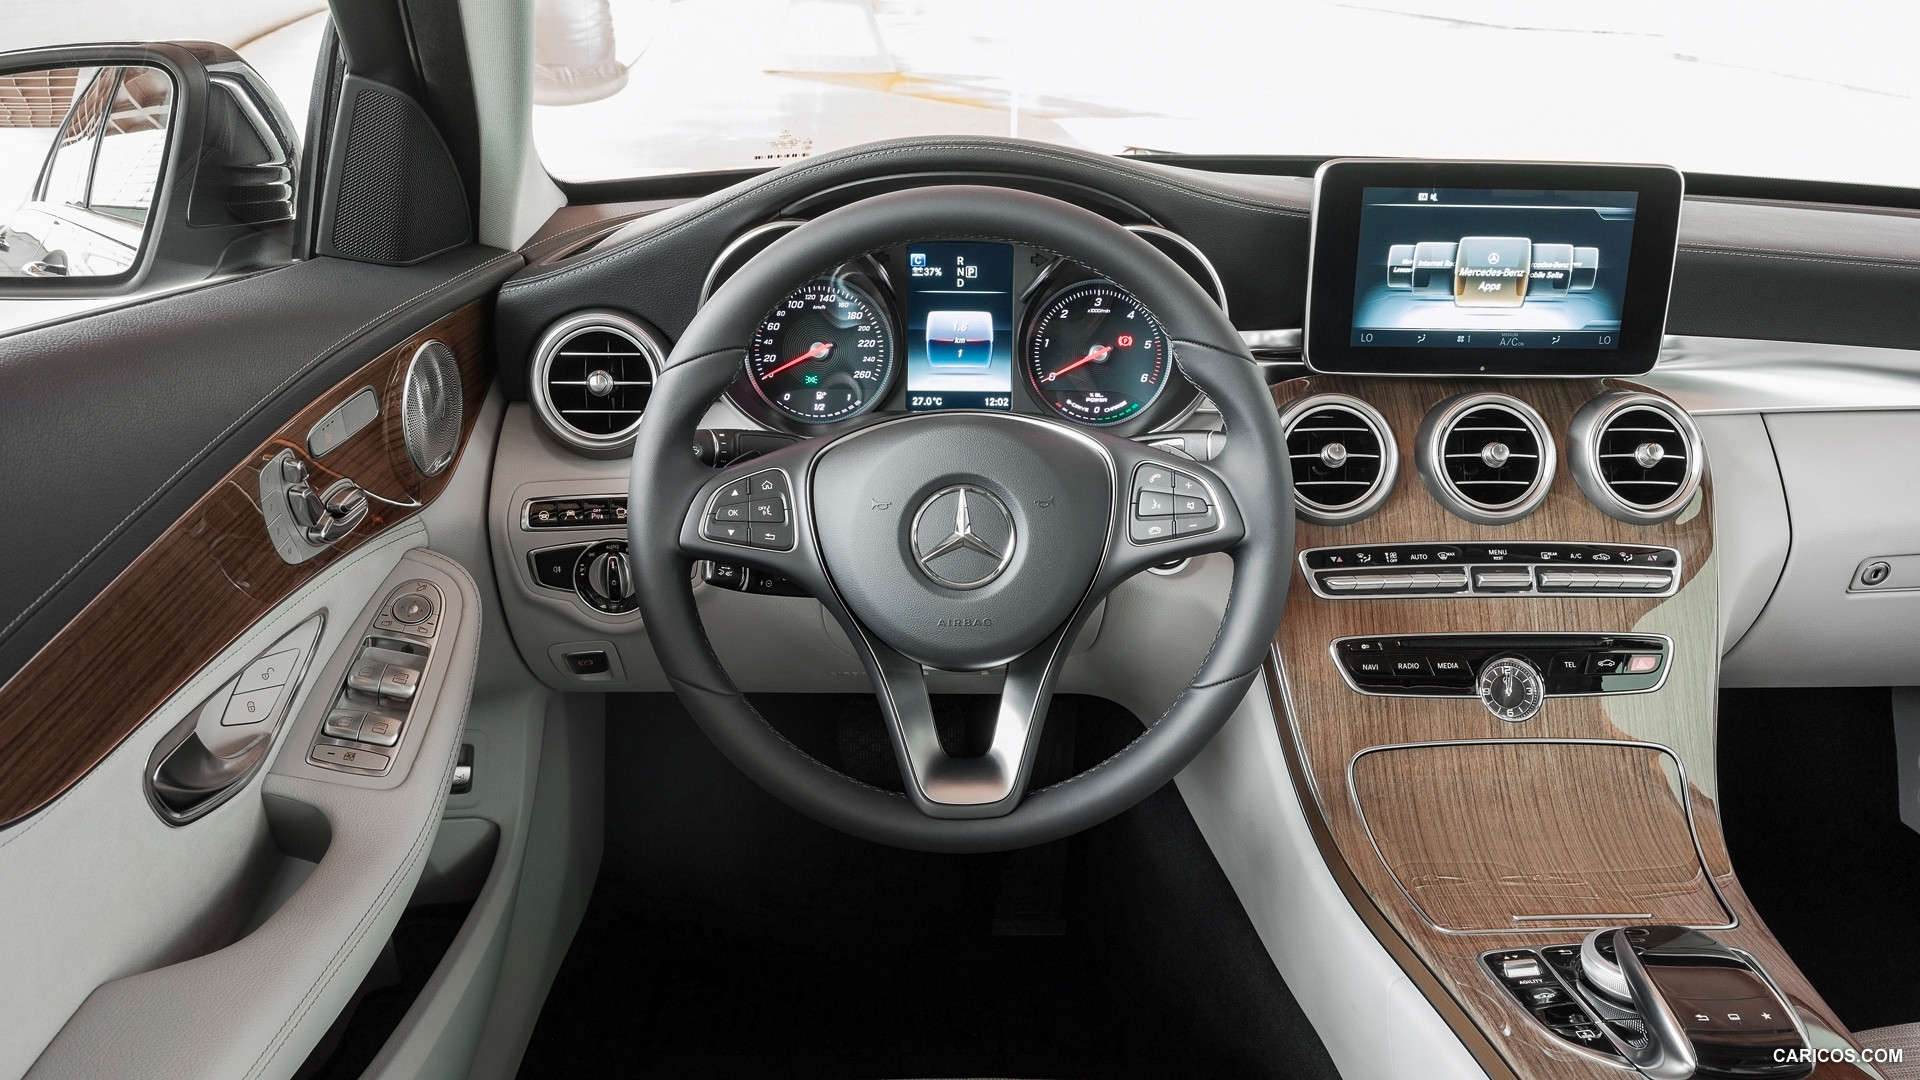 2015 Mercedes-Benz C-Class C300 BlueTEC HYBRID (Exclusiv Line) - Interior, #153 of 181